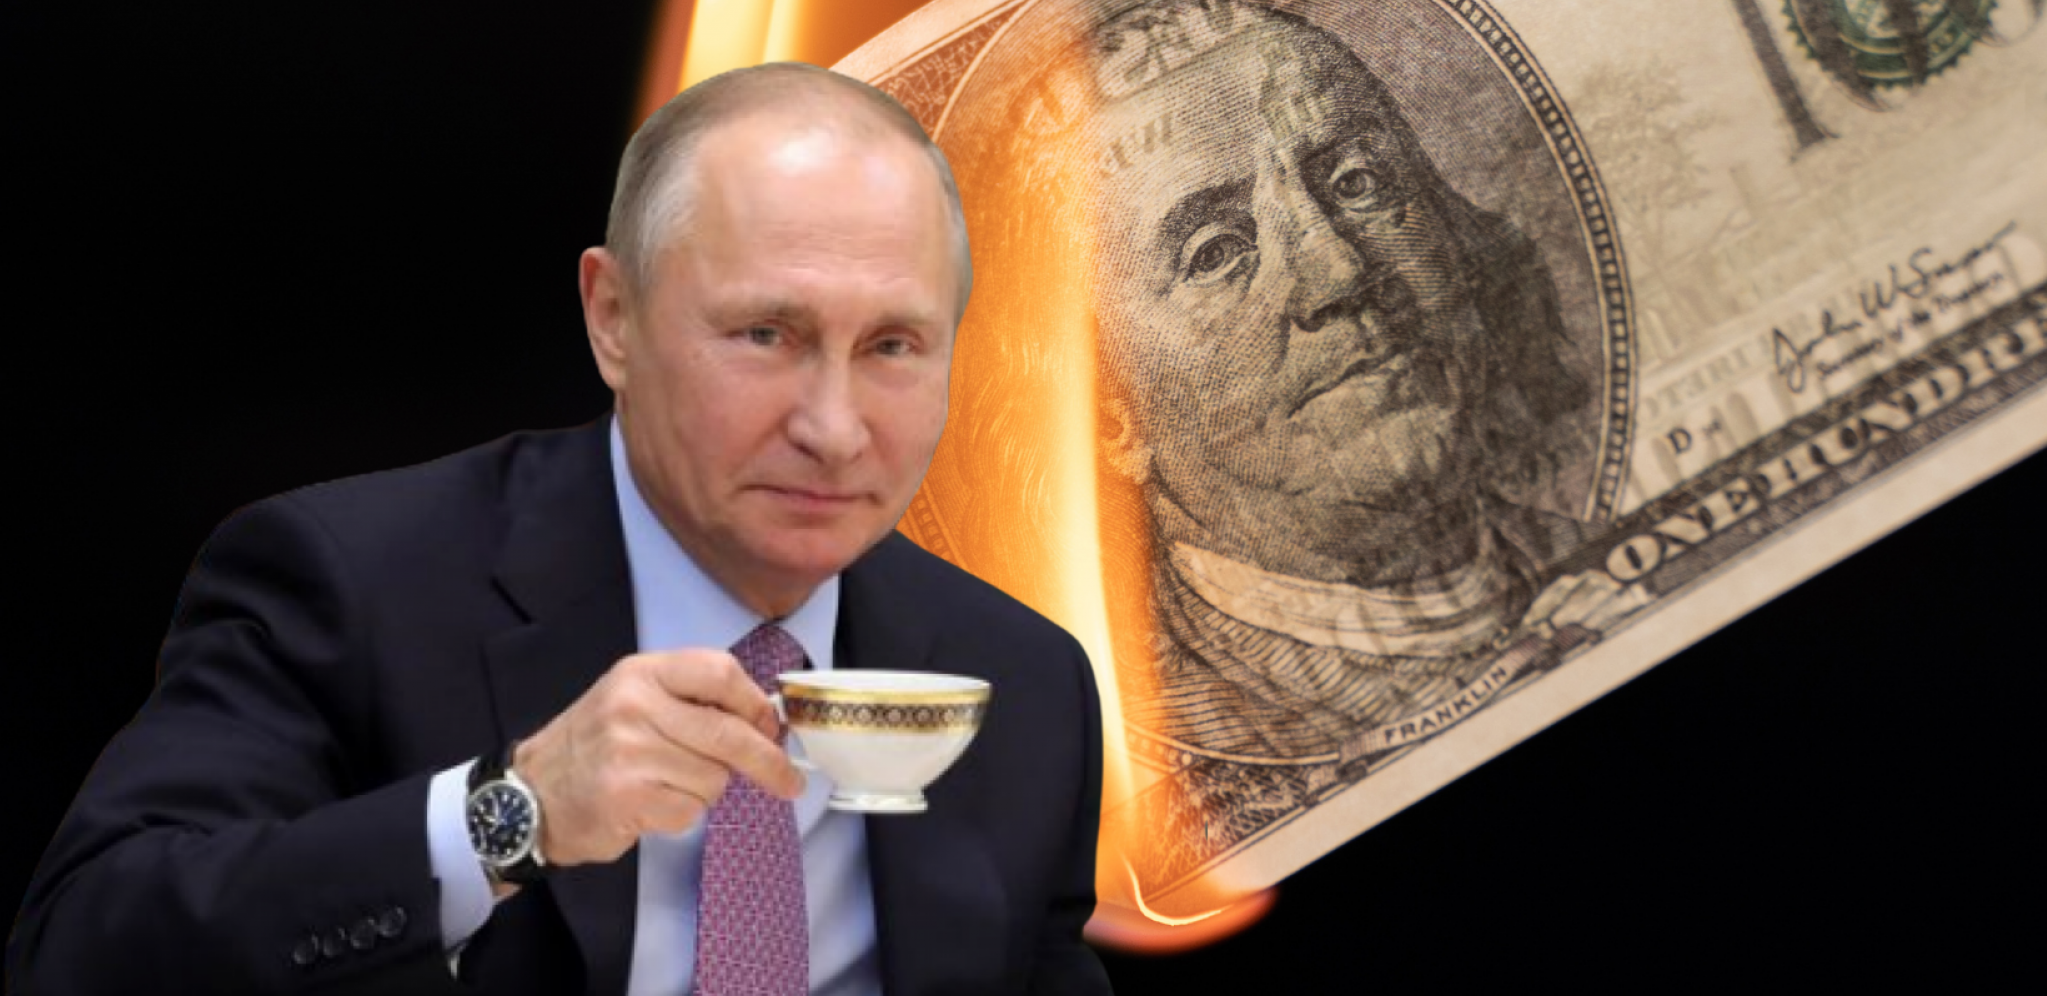 PRLJAVA TAJNA KOJU EU NE ŽELI DA PRIZNA Najbolji evropski ekonomista objasnio kako je Putin spasio rublju i srušio dolar